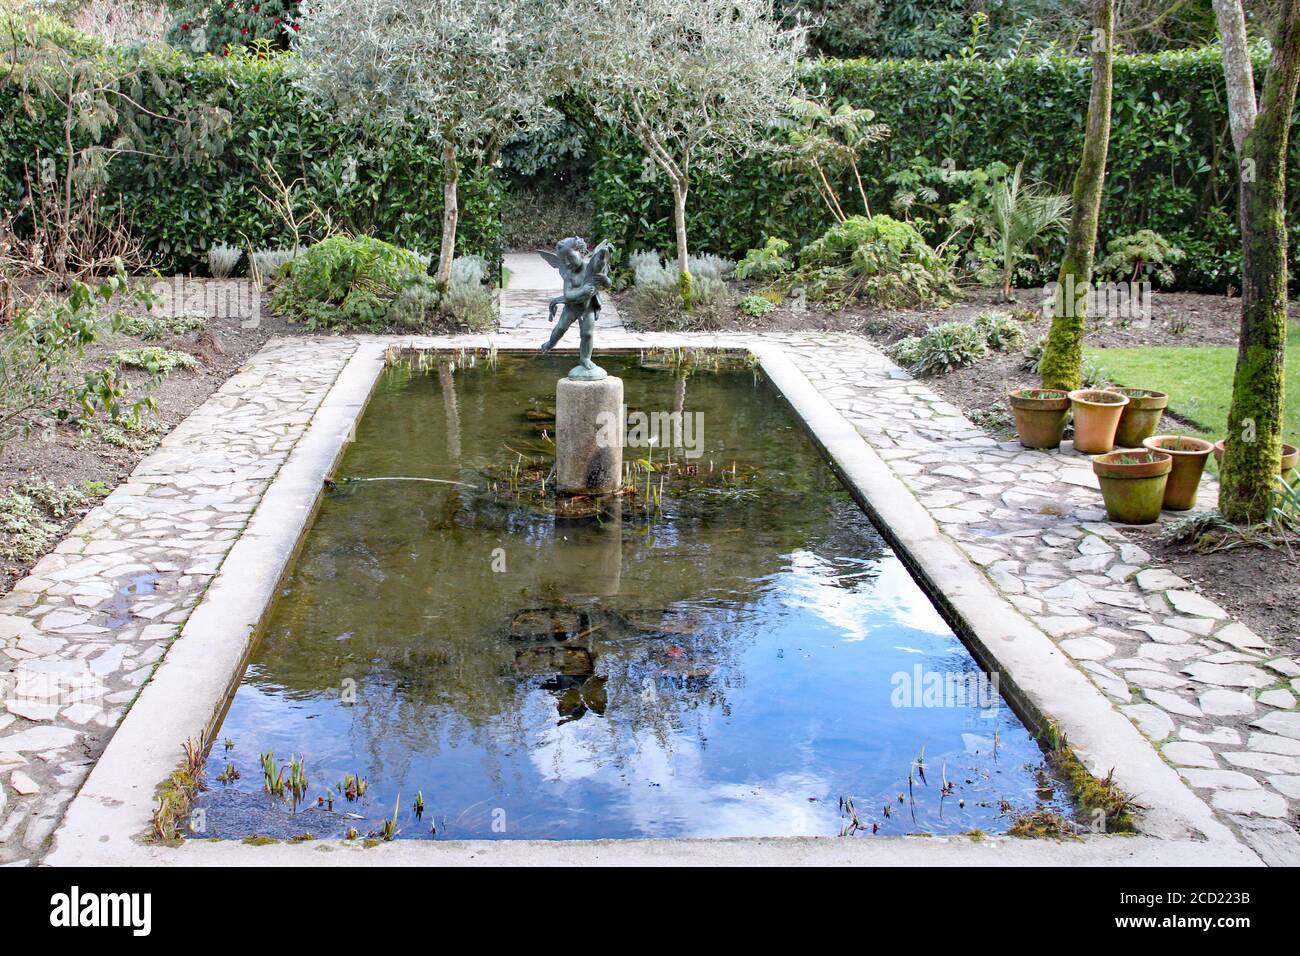 Con un estanque decorativo conseguirás movimiento y belleza en tu jardín -  Los Almendros